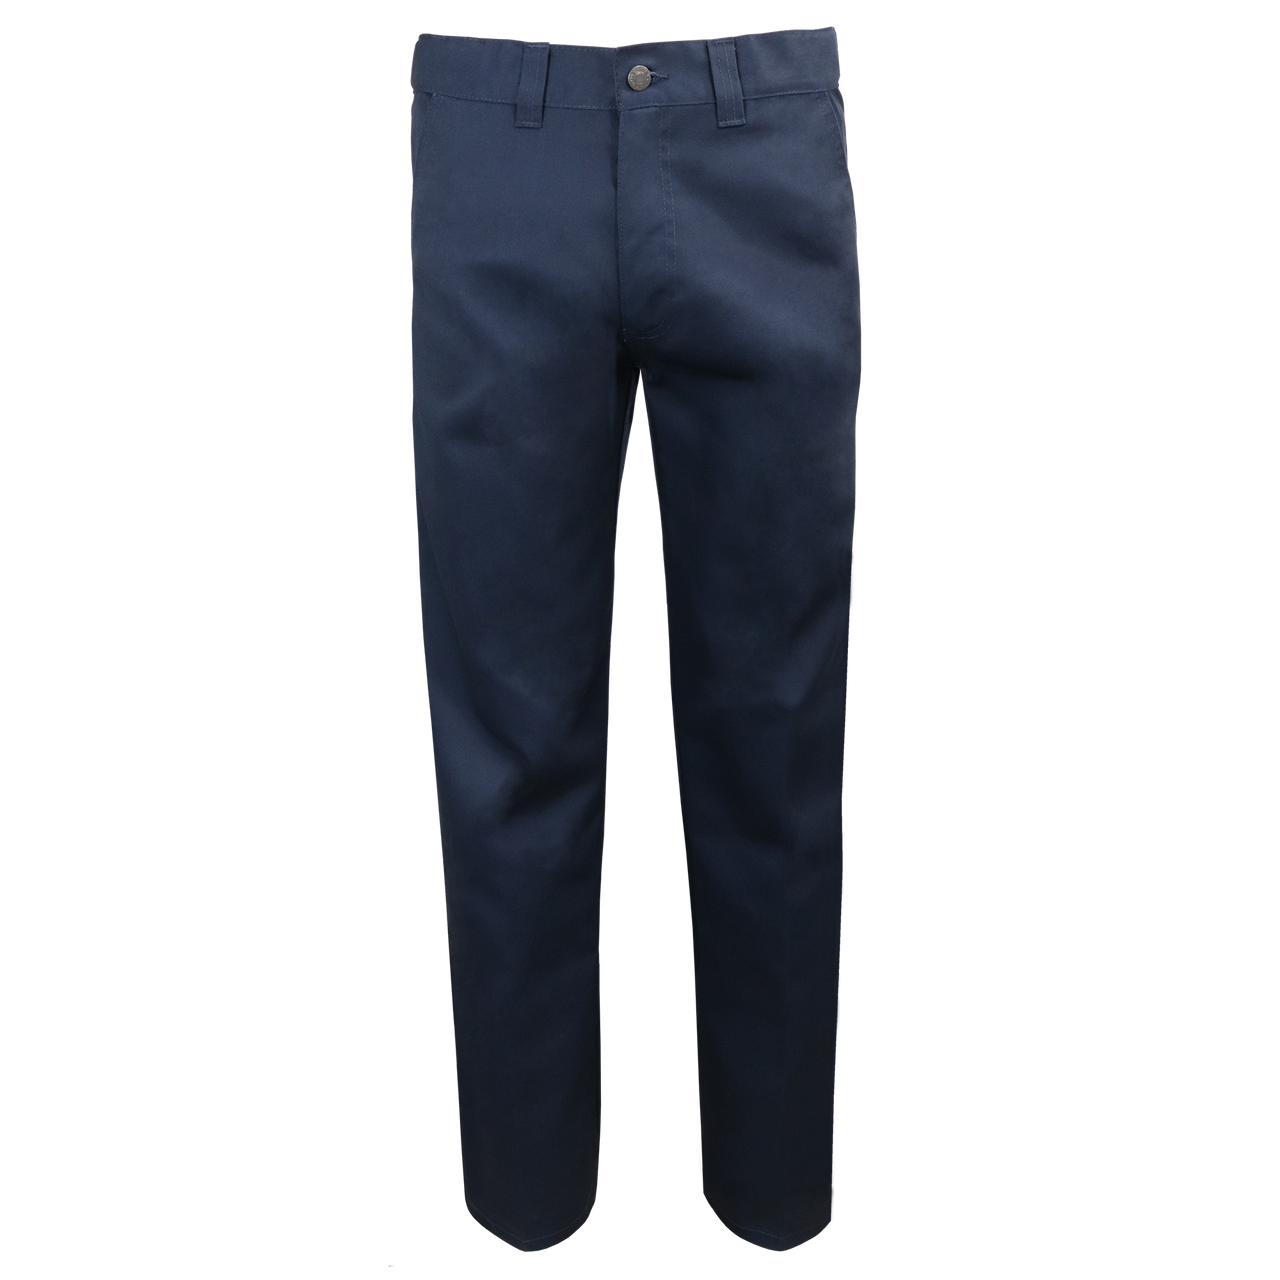 777 - Pantalon de travail ||777 - Workwear pant